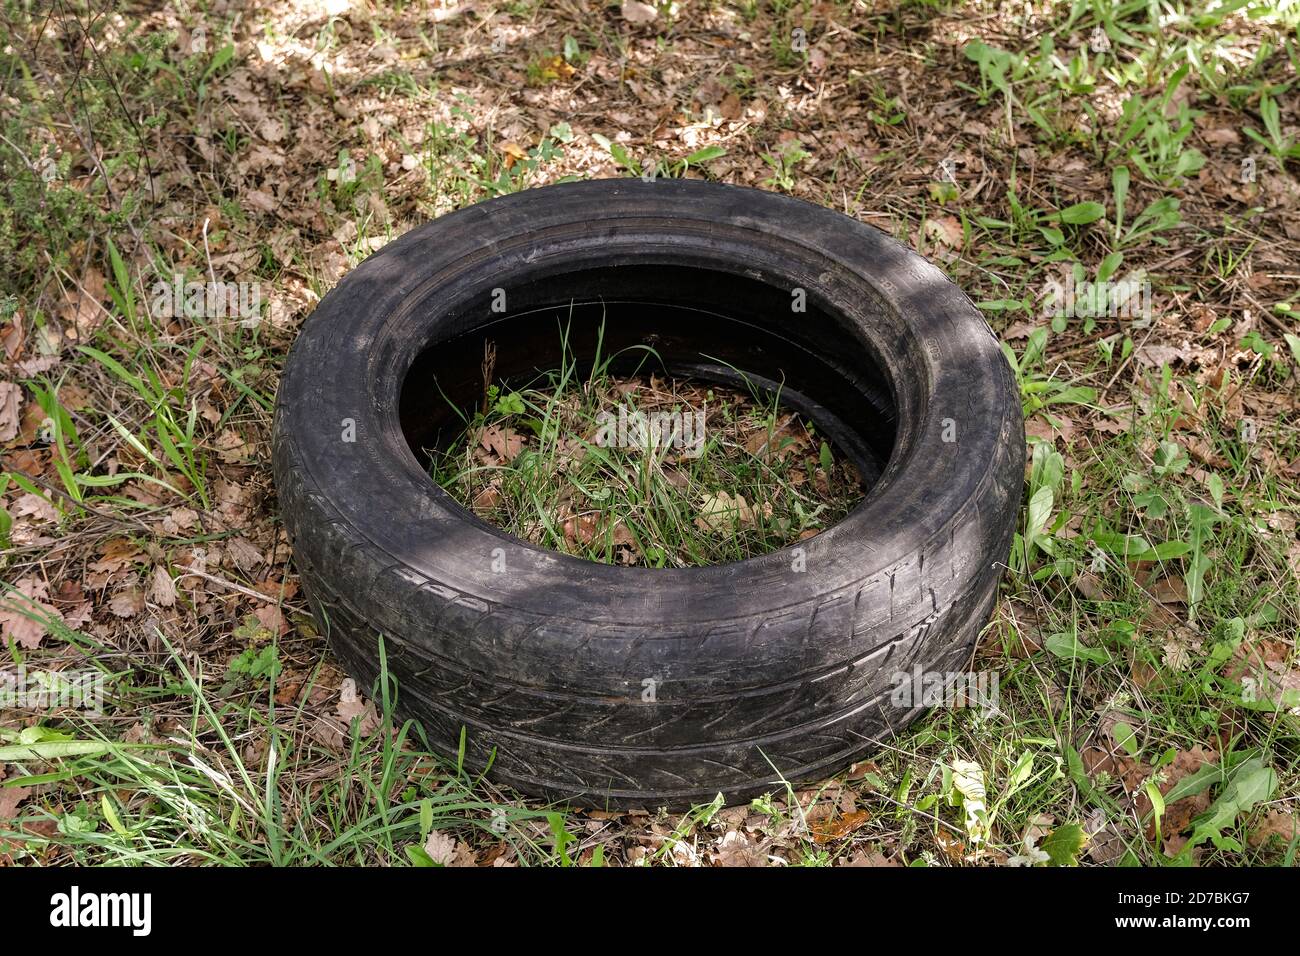 Vieux pneu de voiture en caoutchouc usagé jeté sur l'écosystème forestier brut, environnemental pollution Banque D'Images